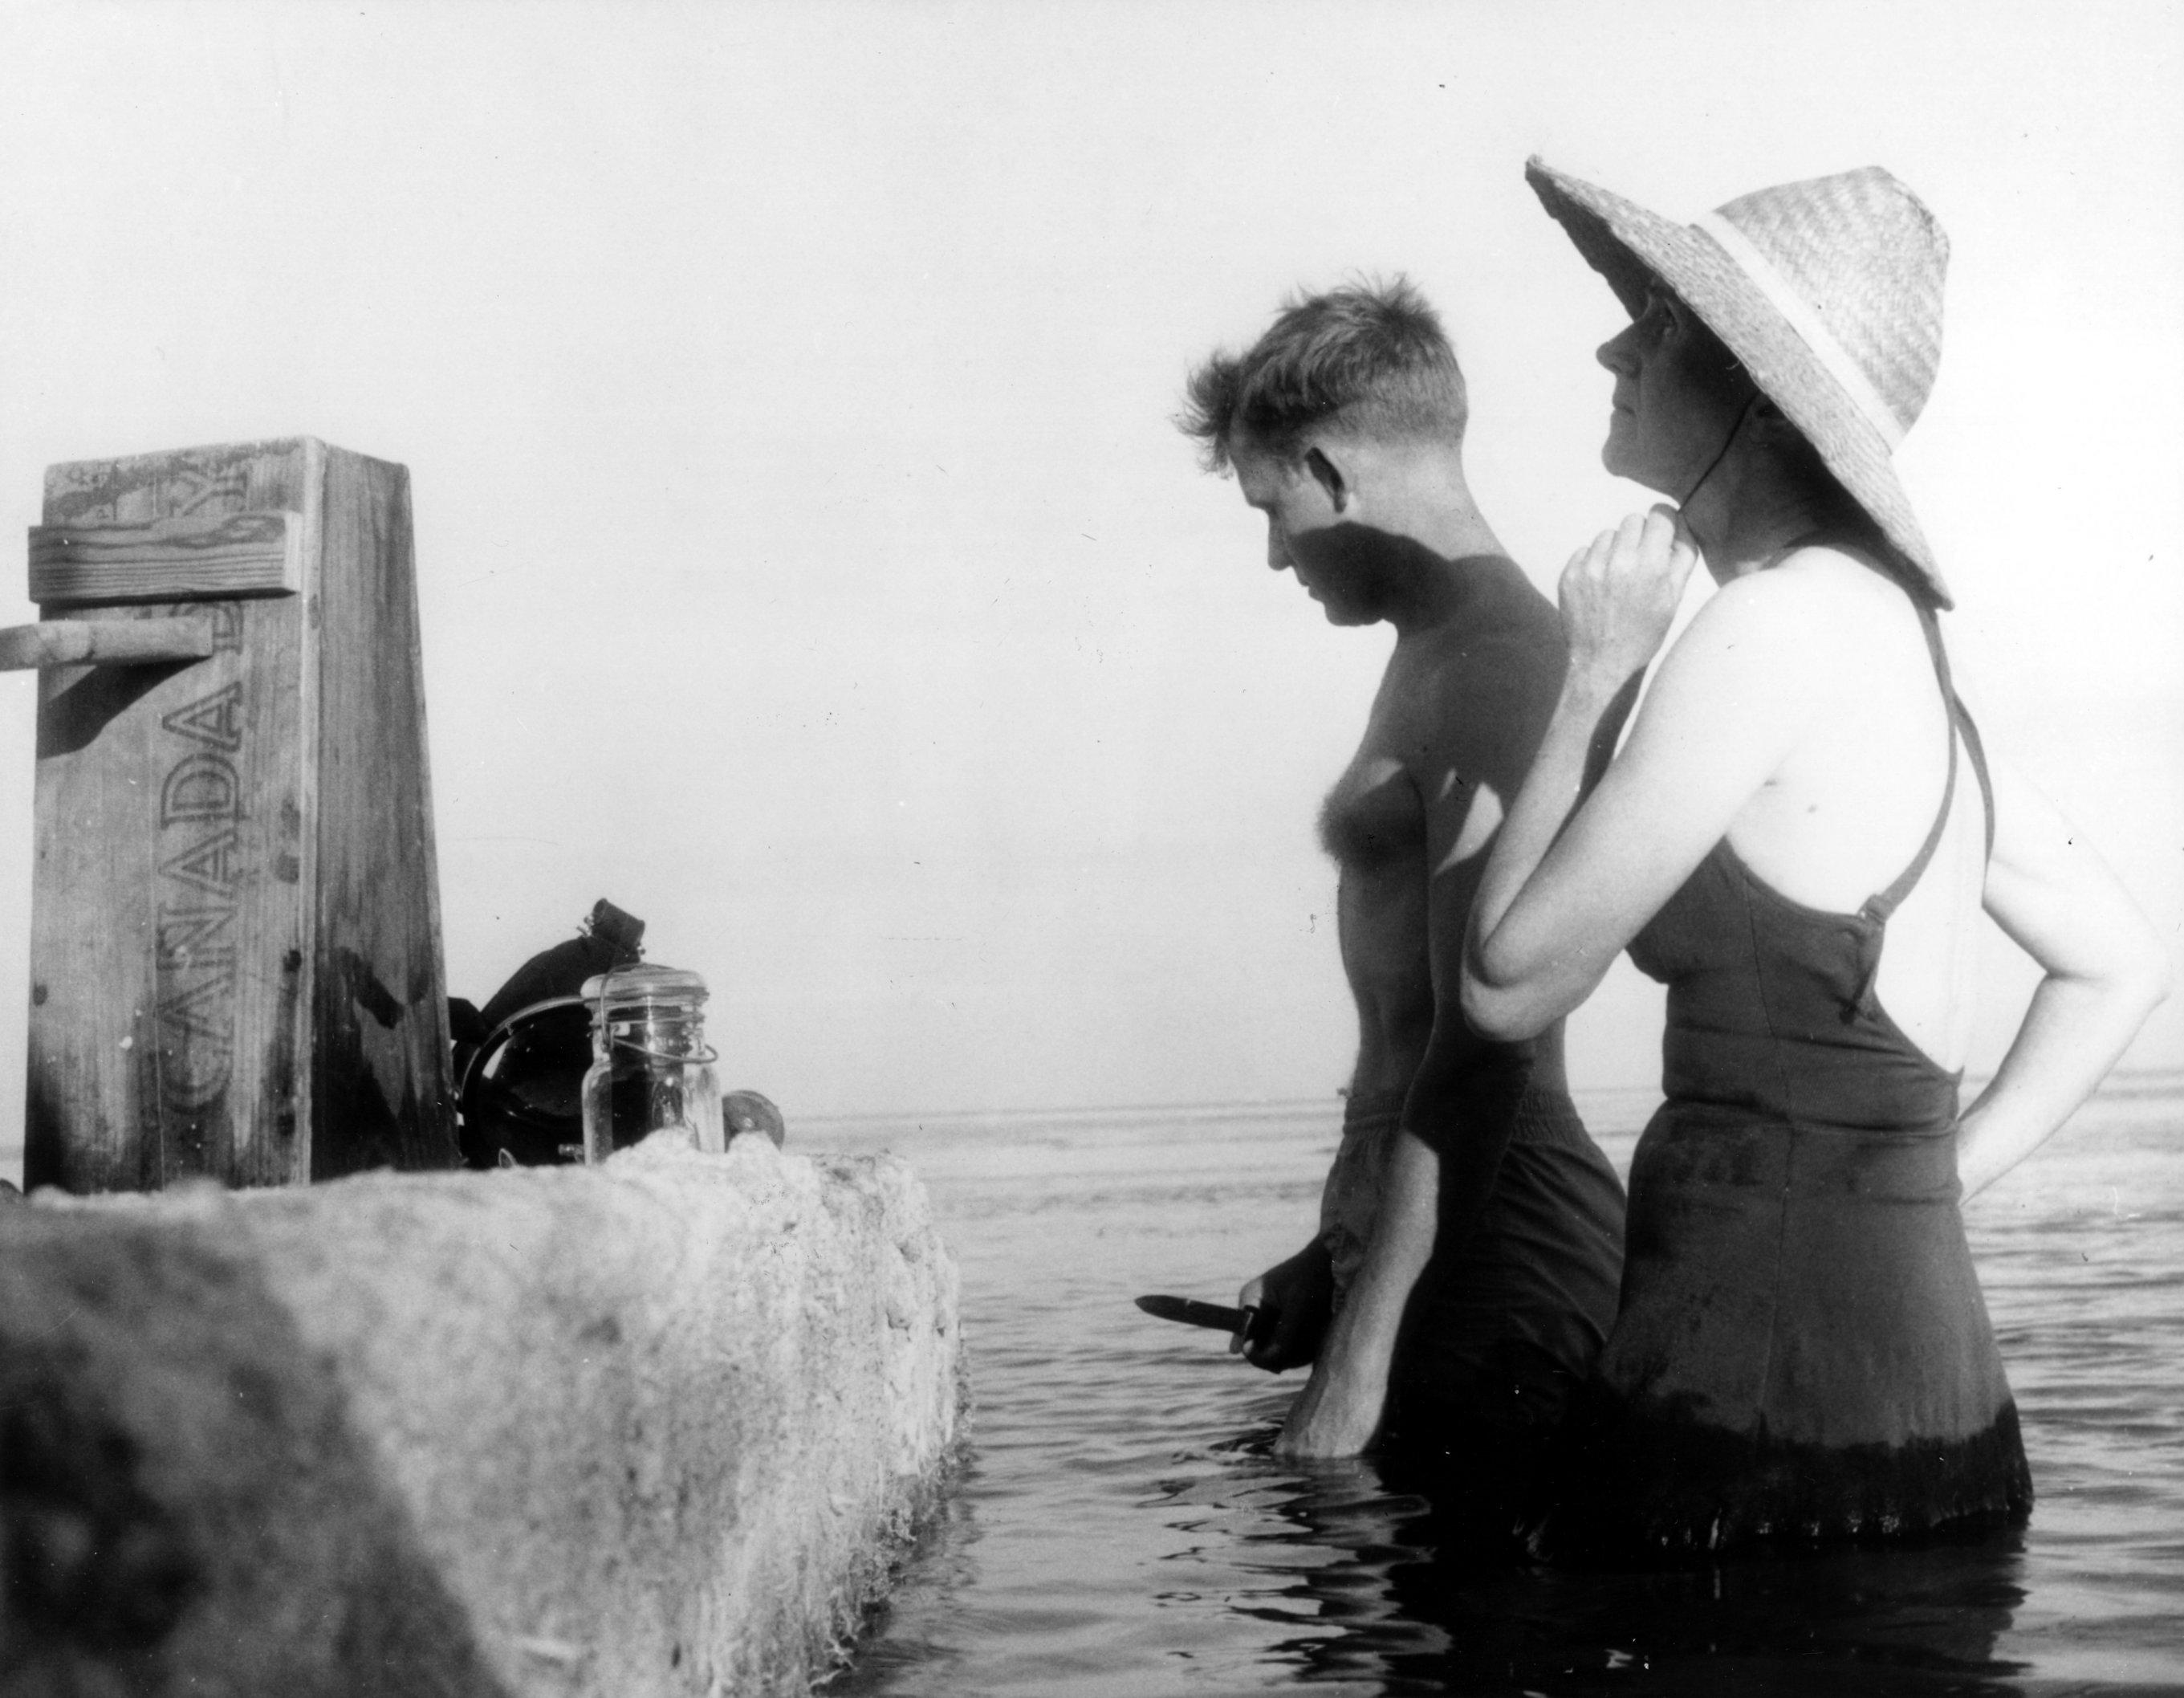 Eine Frau und ein Mann stehen in Badekleidung im Meerwasser.